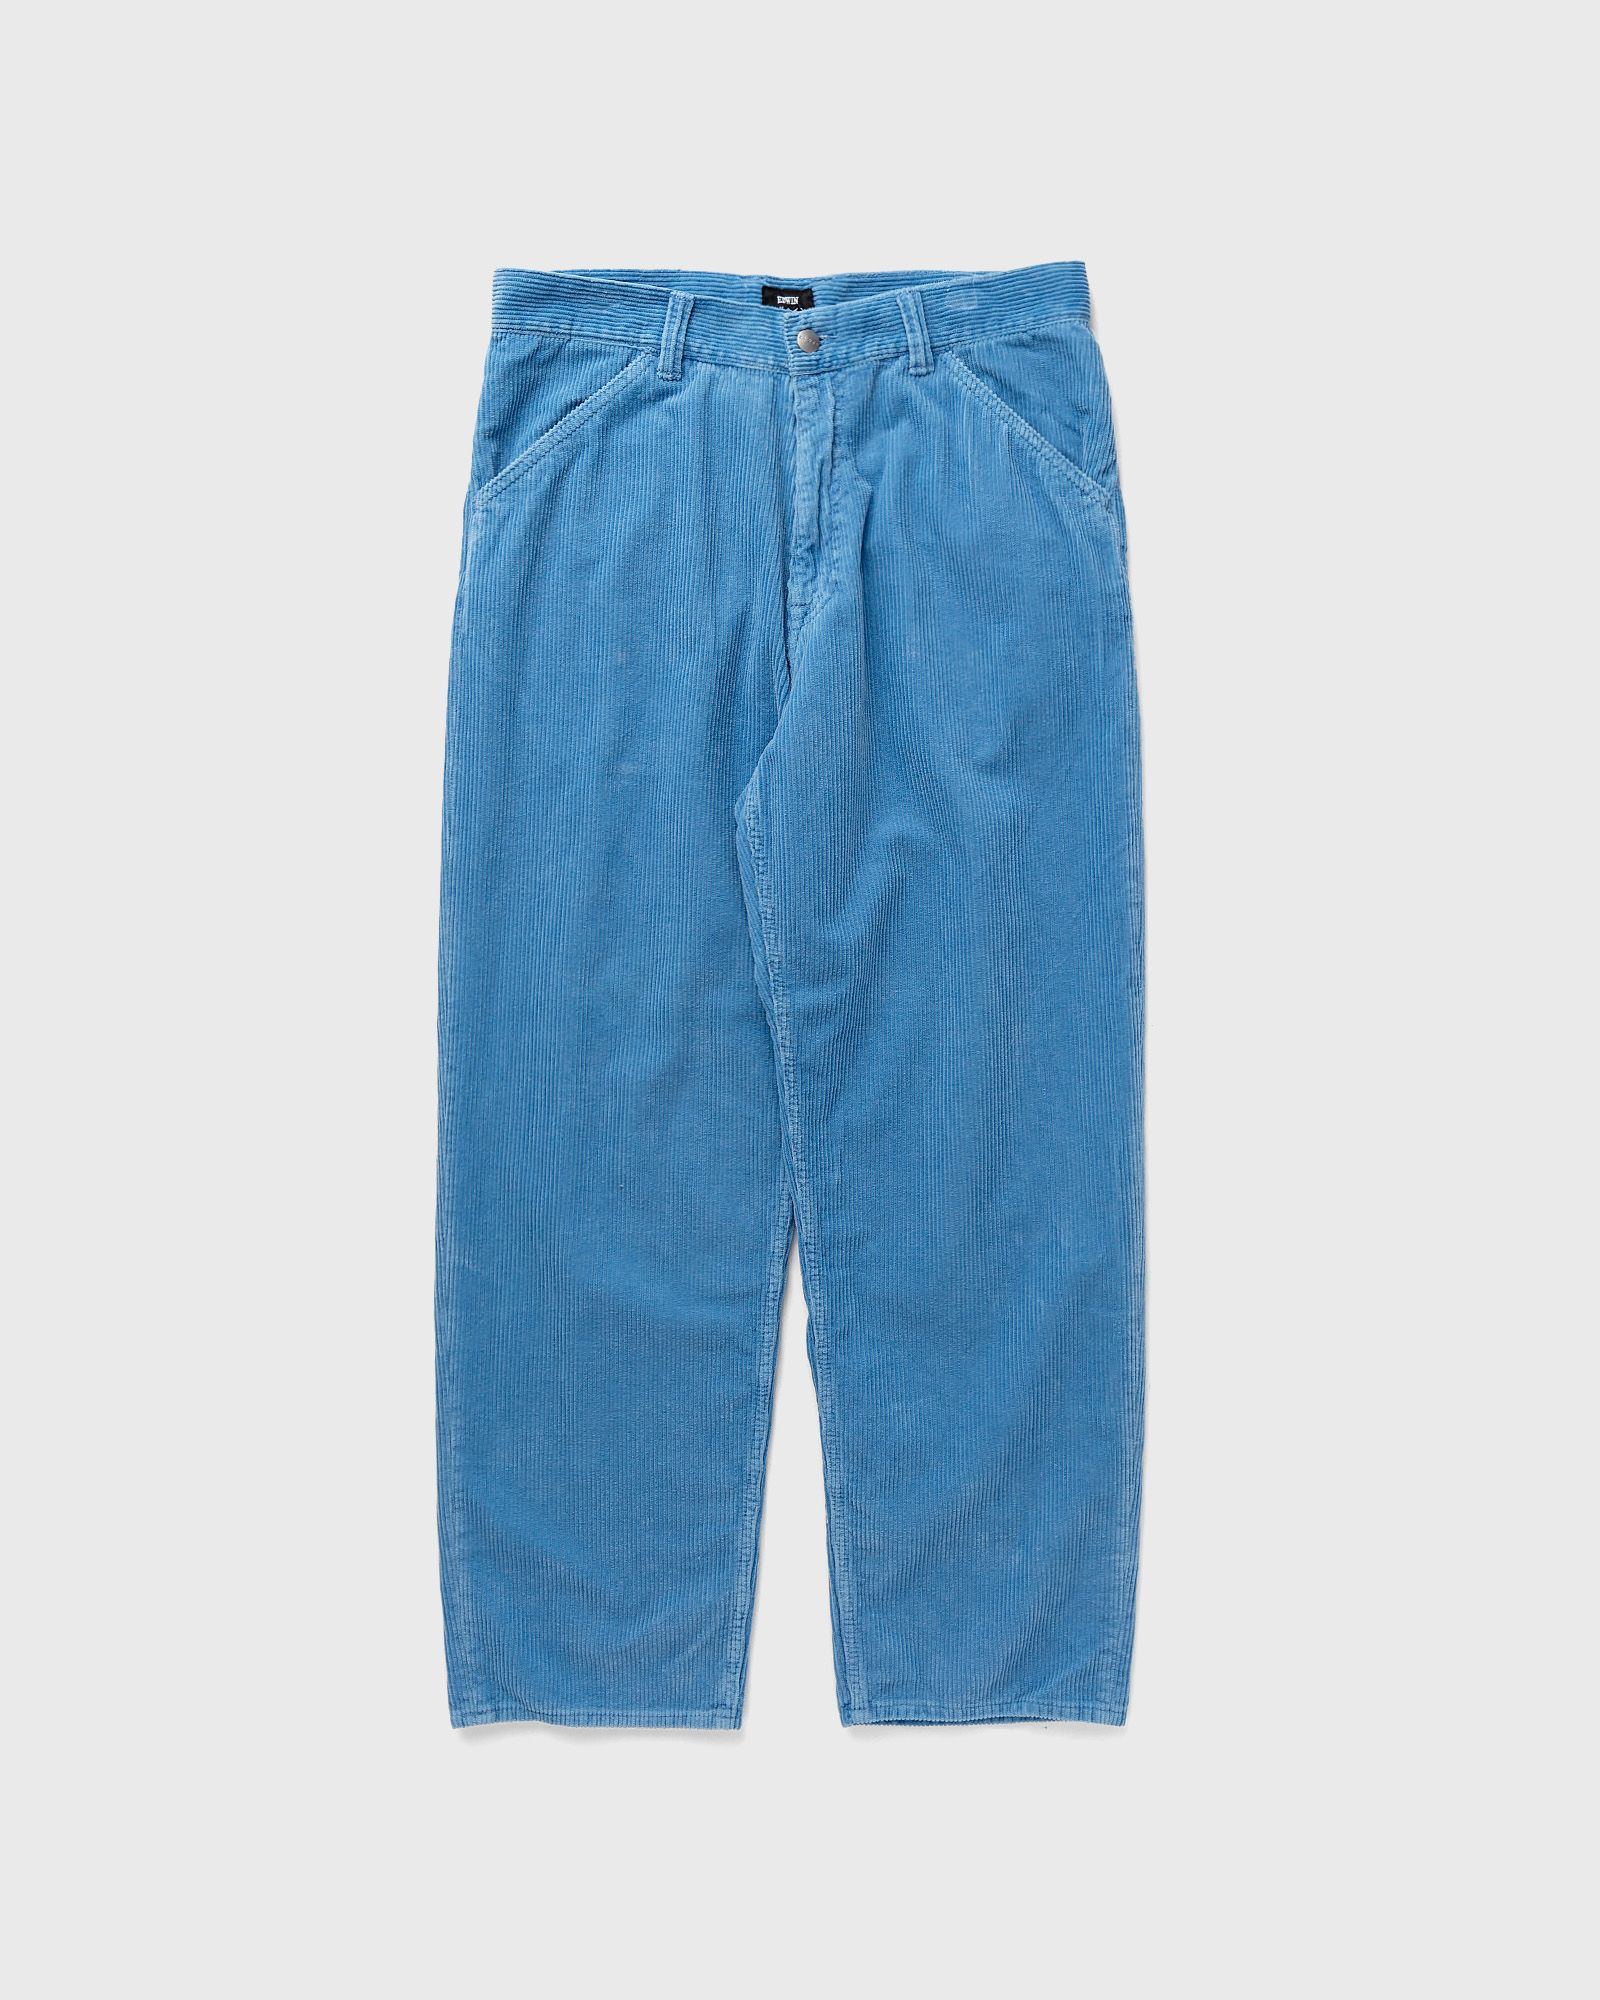 Edwin - sly pant men casual pants blue in größe:l